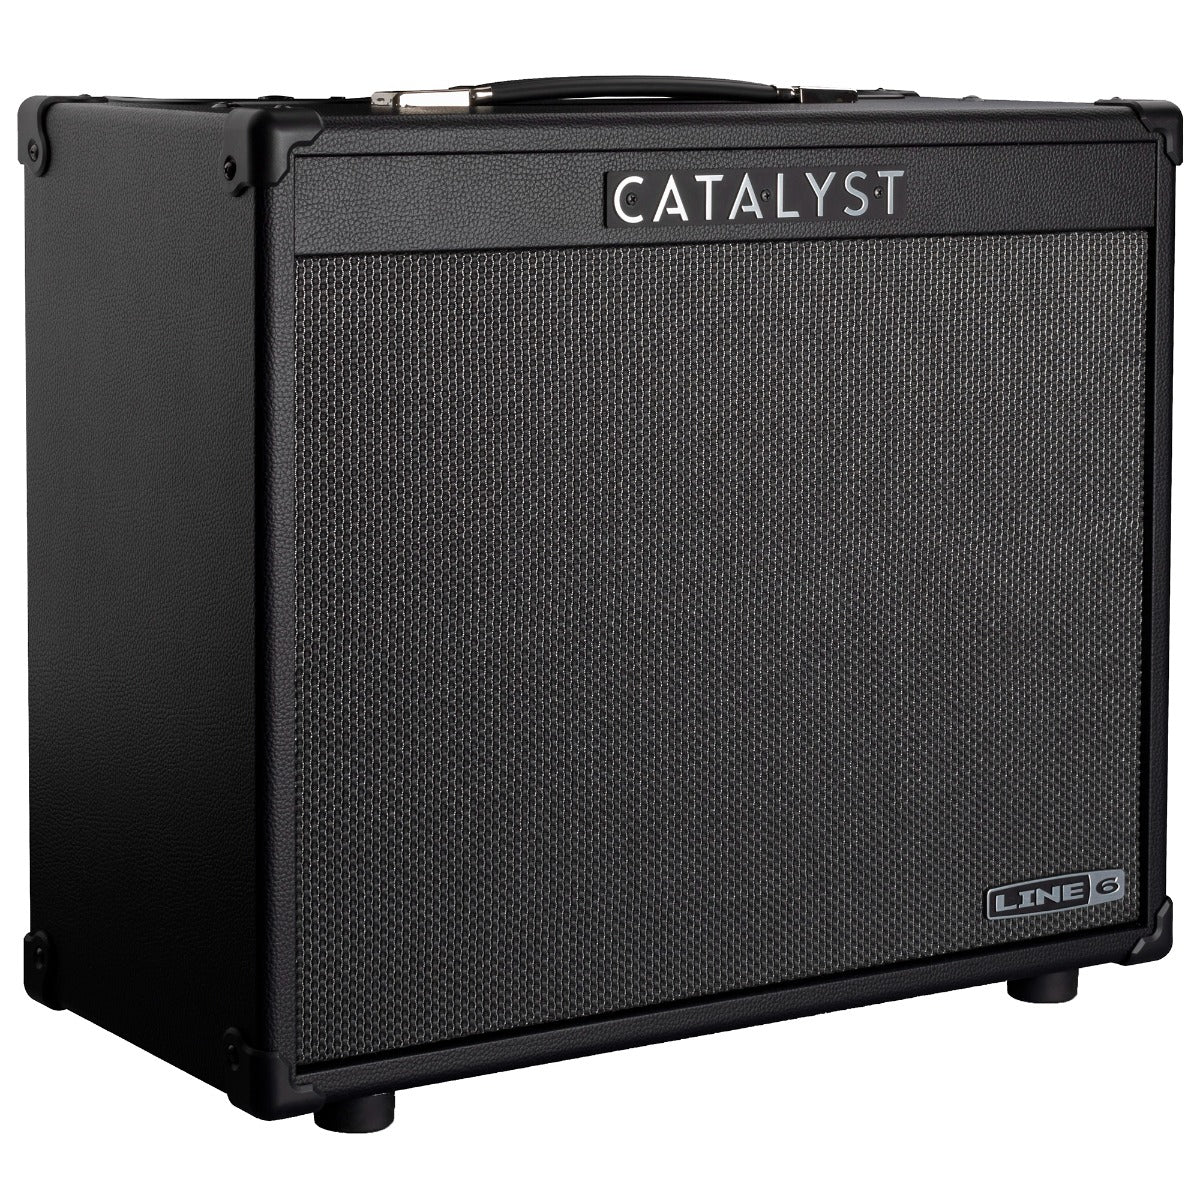 Line 6 Catalyst 100 1x12 Combo Guitar Amplifier, View 1